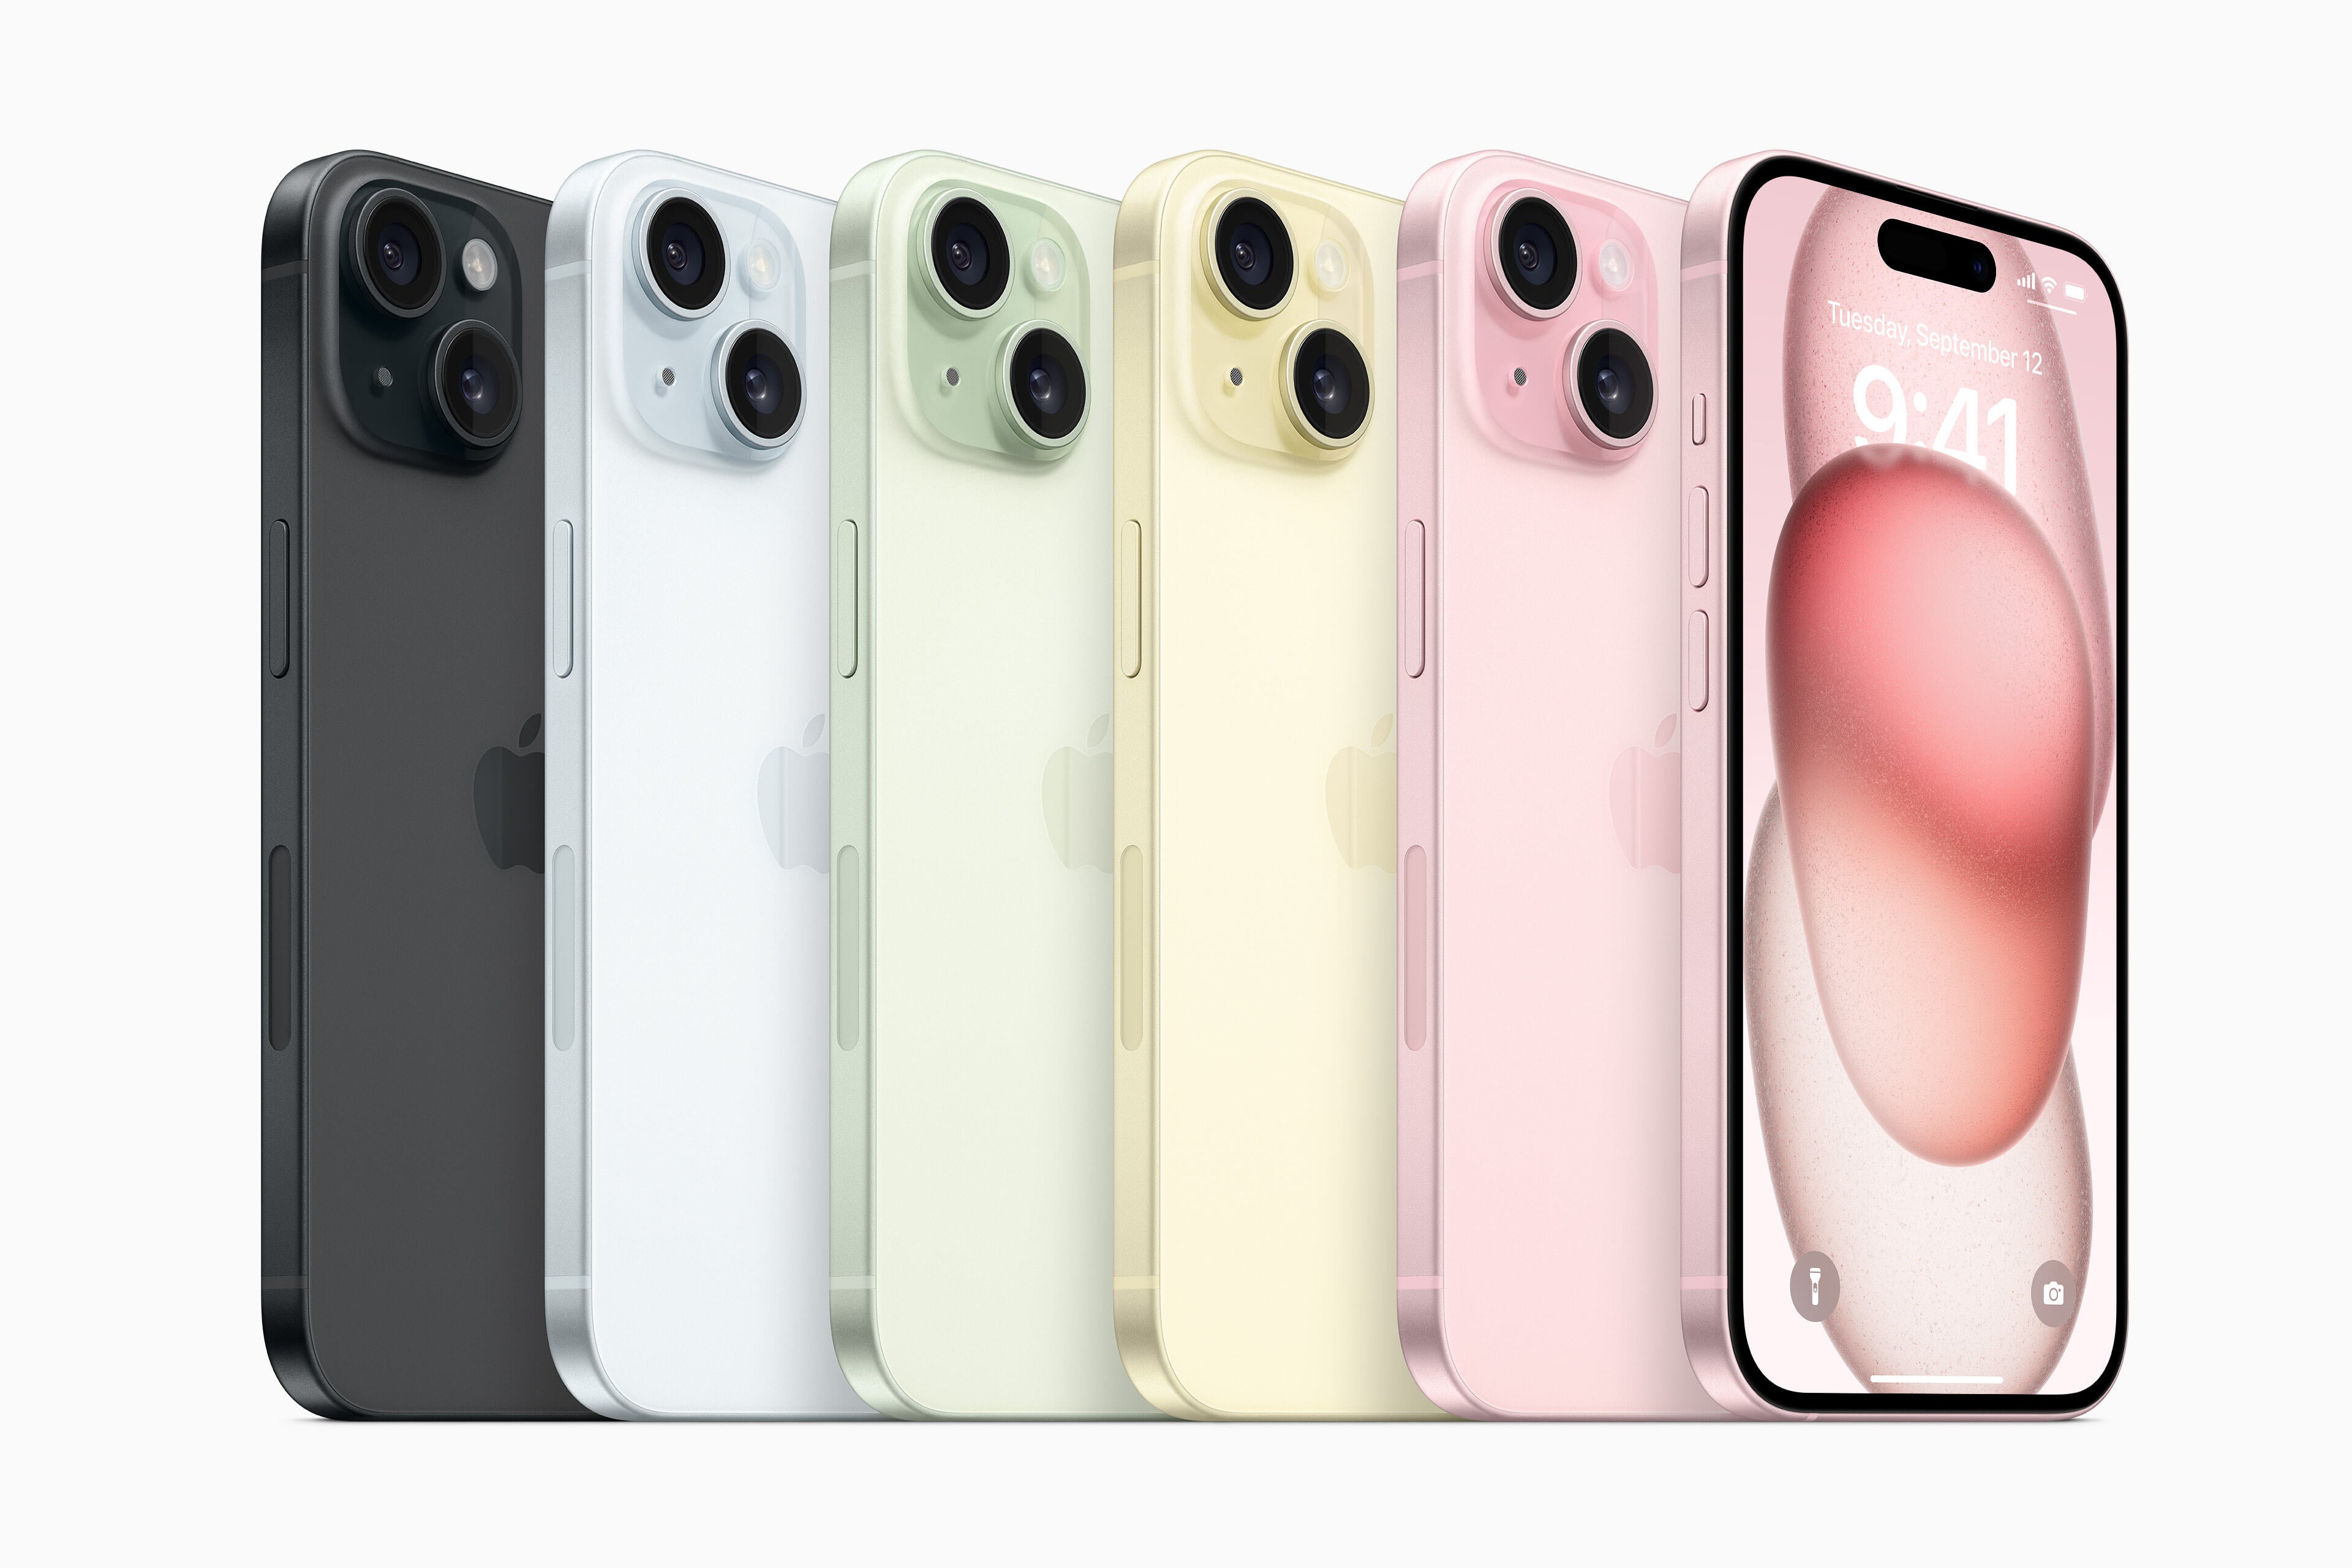 IPhone 15 Opzioni a colori - nero, blu, verde, giallo, rosa (da sinistra a destra) - data di rilascio di iPhone 15, prezzo, specifiche e caratteristiche da sapere